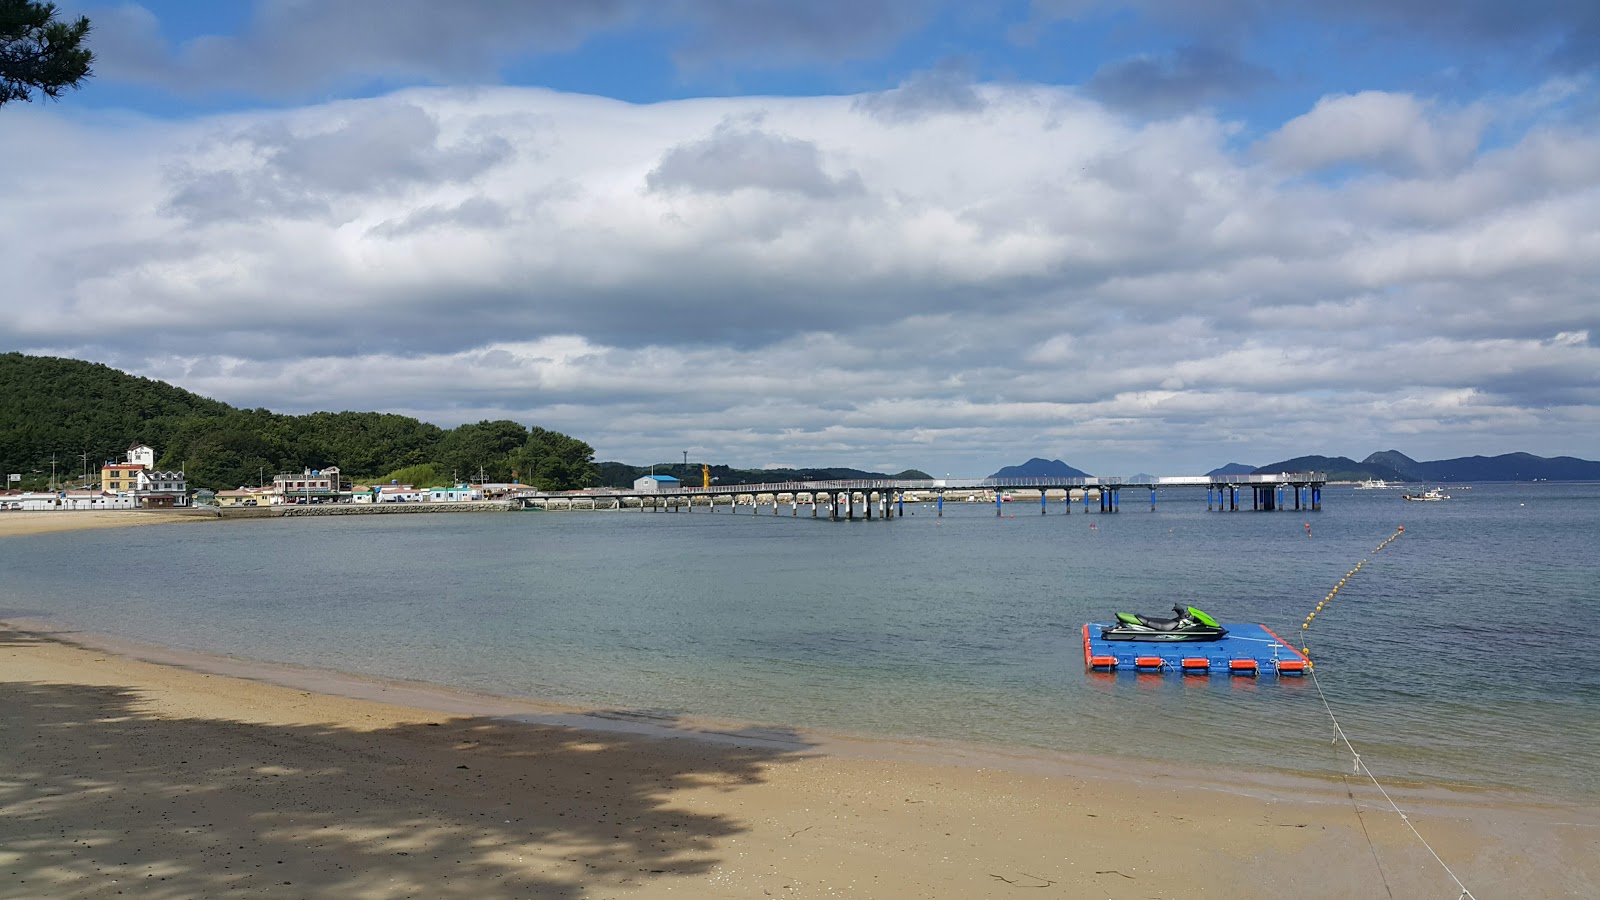 Zdjęcie Myeongsa Beach - popularne miejsce wśród znawców relaksu